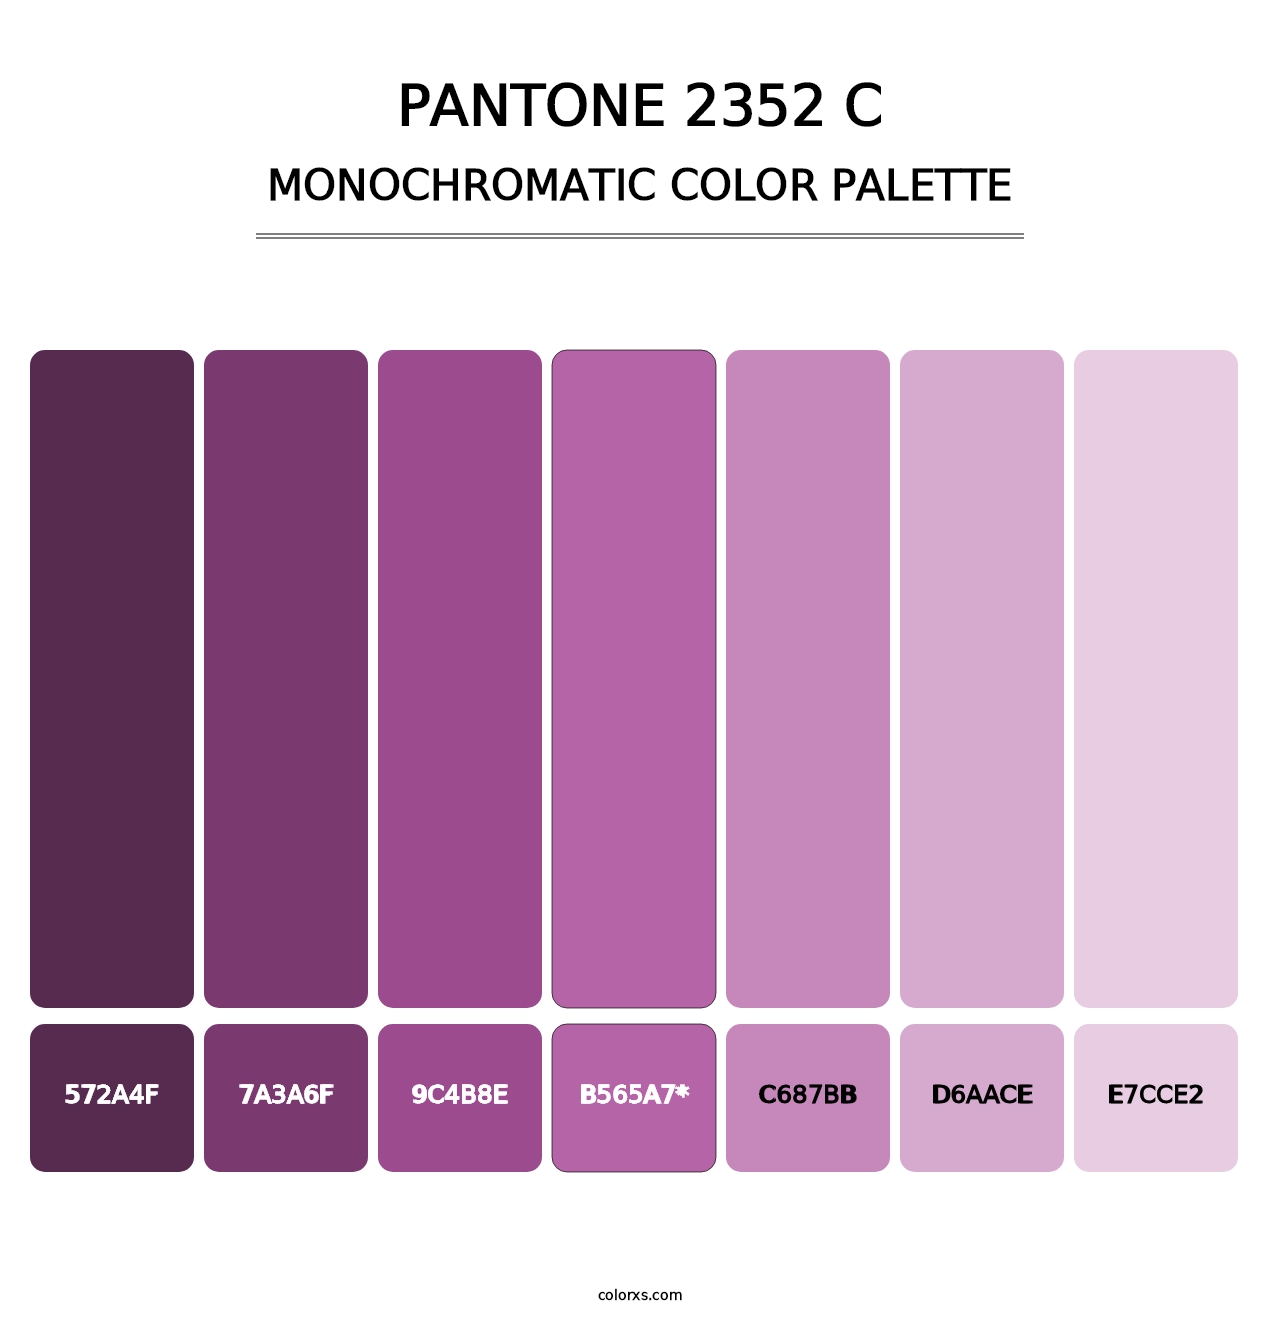 PANTONE 2352 C - Monochromatic Color Palette